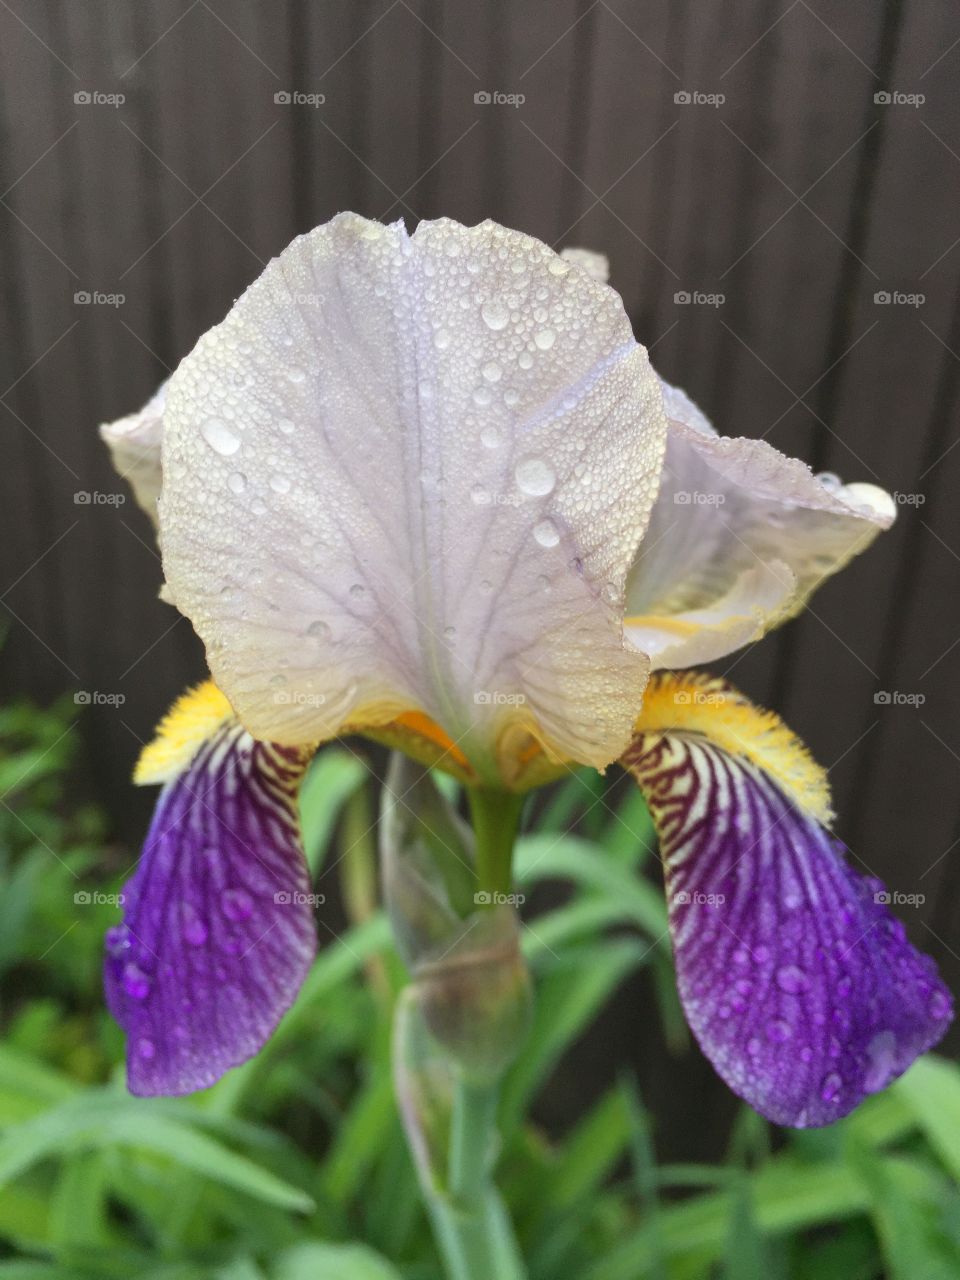 Iris flower after the rain